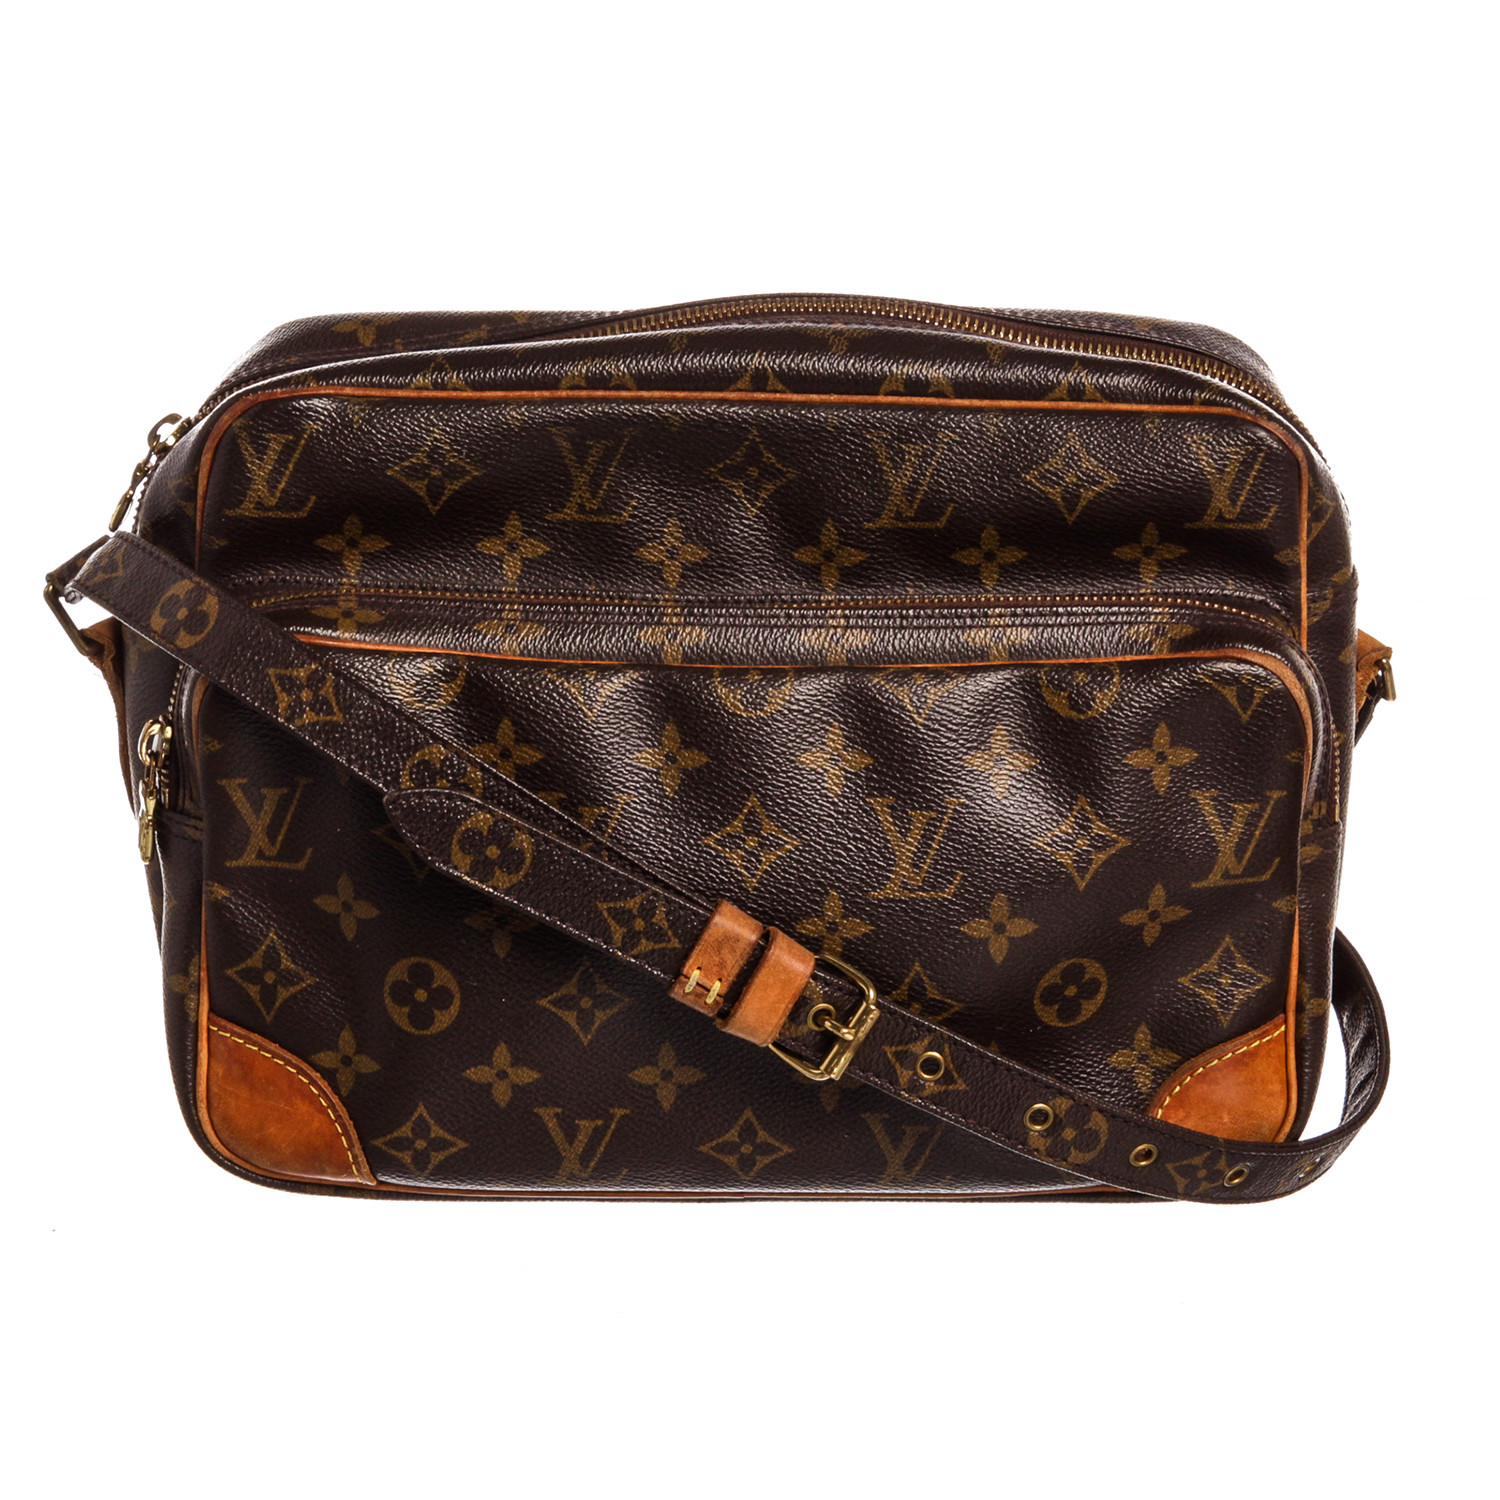 Louis Vuitton - Taiga Briefcase - Deep Brown - SHW - Pre Loved